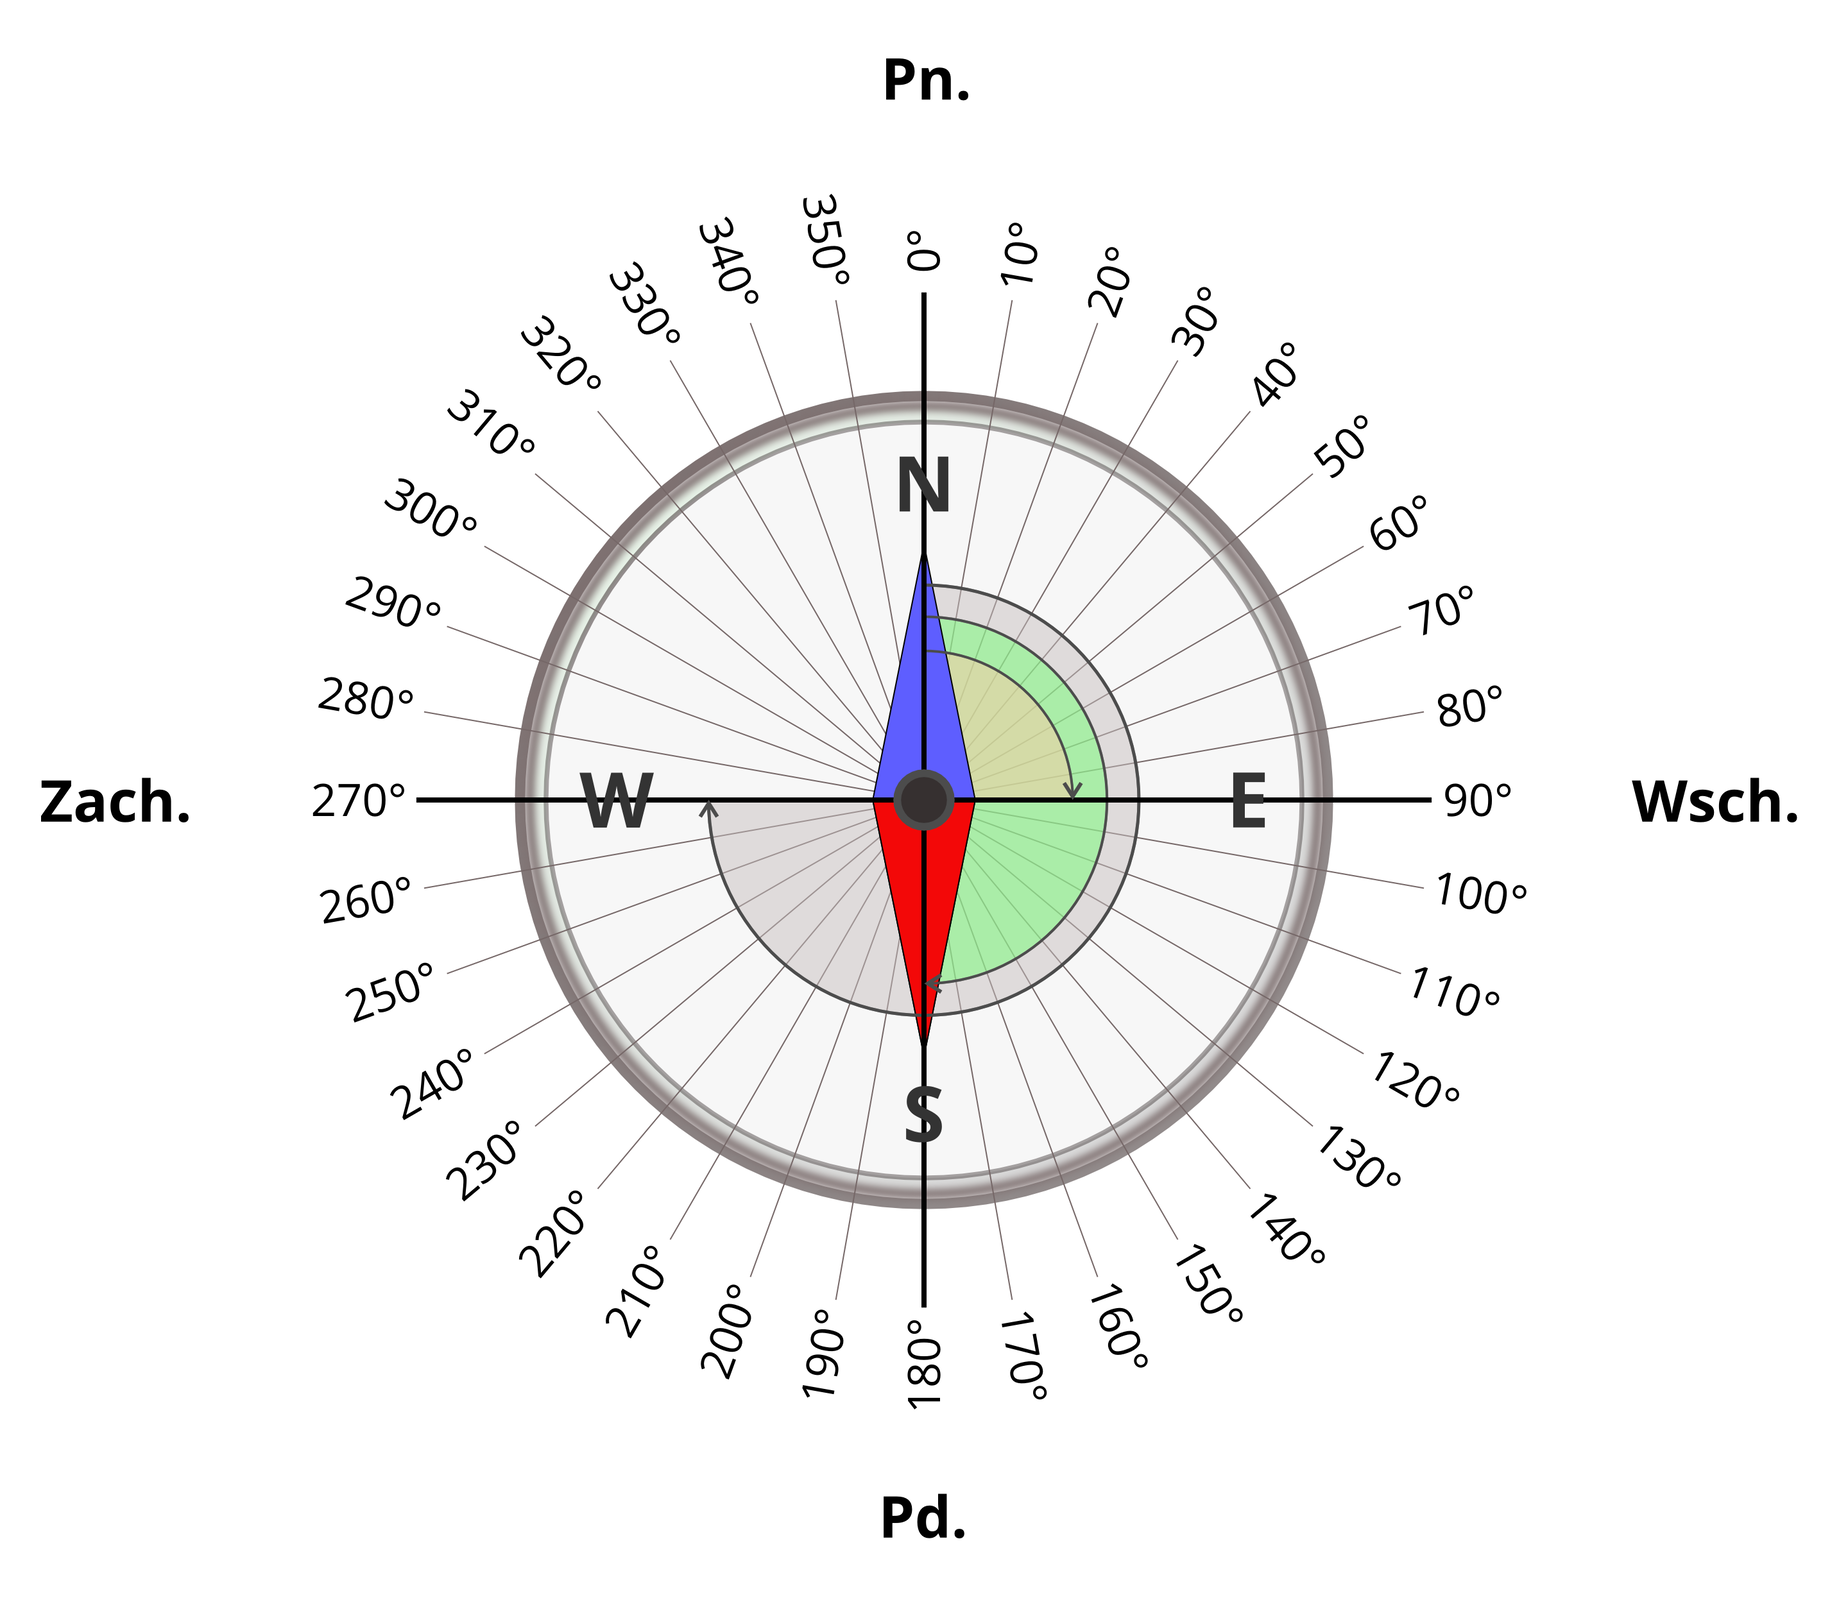 Ilustracja przedstawia kompas. Wokół okrągłej krawędzi kompasu podziałka kątowa co dziesięć stopni. Punkt zero stopni pokrywa się z kierunkiem północnym. Wschód to dziewięćdziesiąt stopni, południe to sto osiemdziesiąt stopni. Zachód dwieście siedemdziesiąt stopni. Wewnątrz kompasu igła magnetyczna. Niebieski koniec igły wskazuje północ. Drugi przeciwległy koniec – czrwony wskazuje południe. Na tarczy kompasu znajdują się wypisane kierunki świata w formie skrótów. Skróty kierunków świata są oznaczone dużymi literami: litera N – północ znajduje się na górze tarczy, W – zachód po lewej stronie tarczy, S – południe na dole tarczy, litera E wskazuje wschód i znajduje się po prawej stronie tarczy.